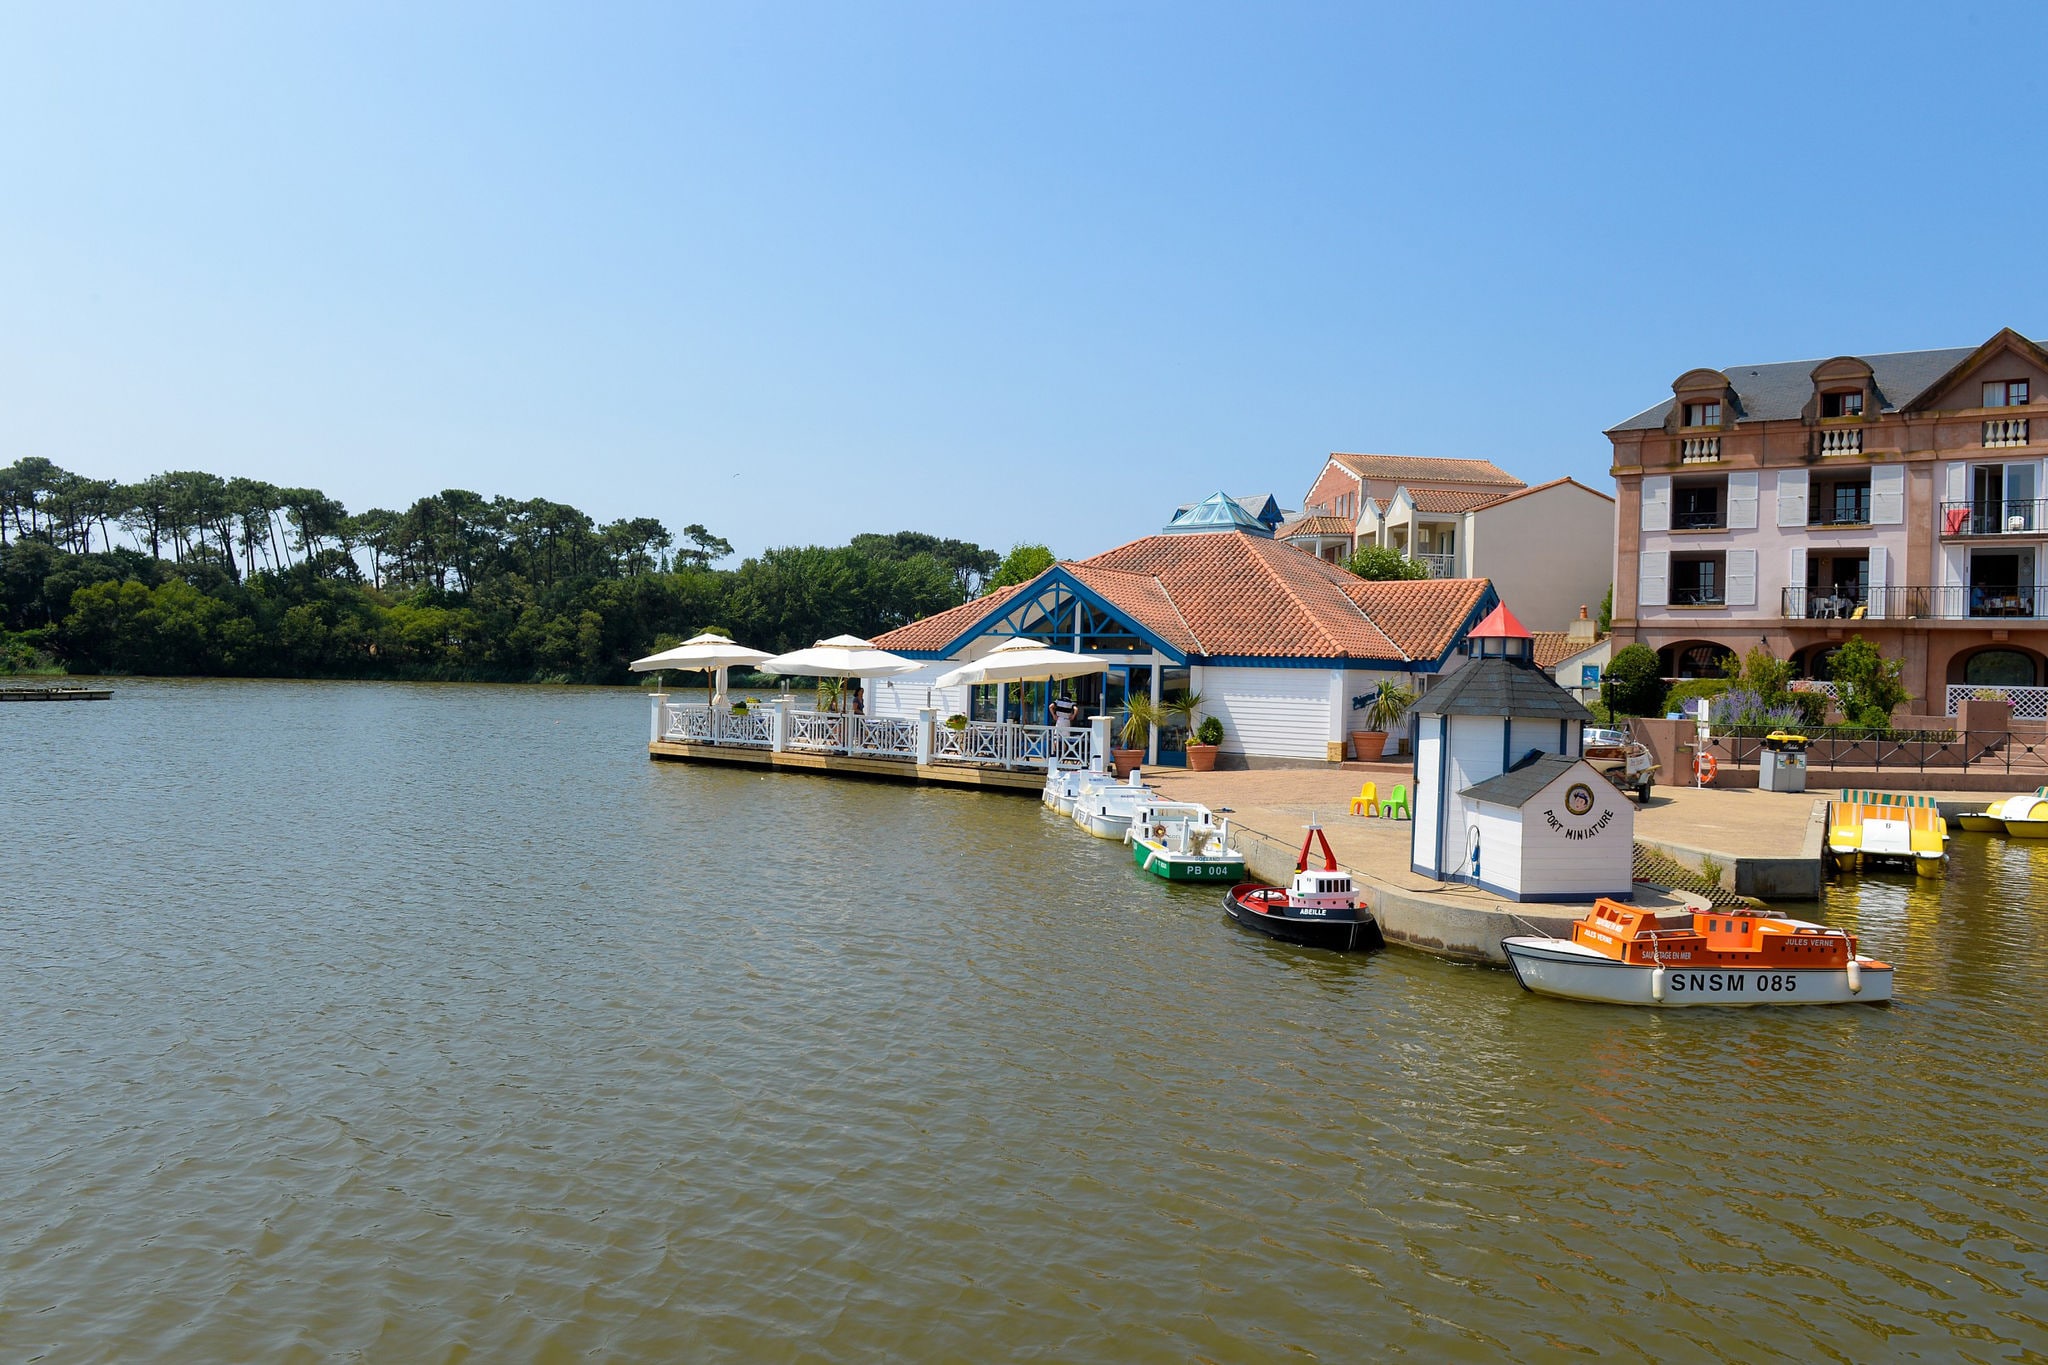 Stilvolle Ferienwohnung in der Nähe eines Sees in der Vendée